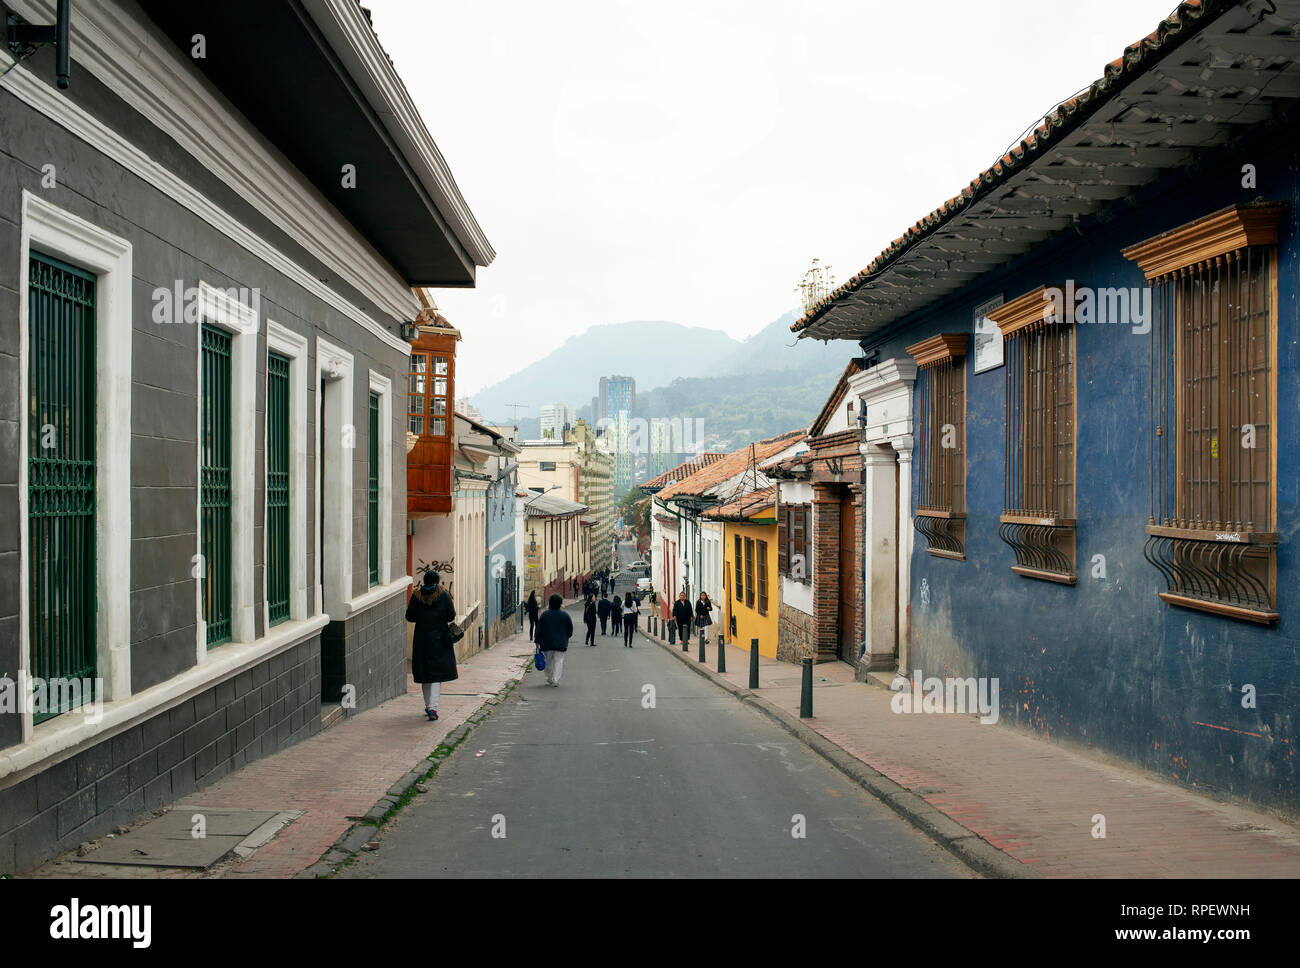 Vues rue colorés avec les habitants et les maisons coloniales espagnoles dans la Candelaria, le quartier historique de Bogota, Colombie. Sep 2018 Banque D'Images